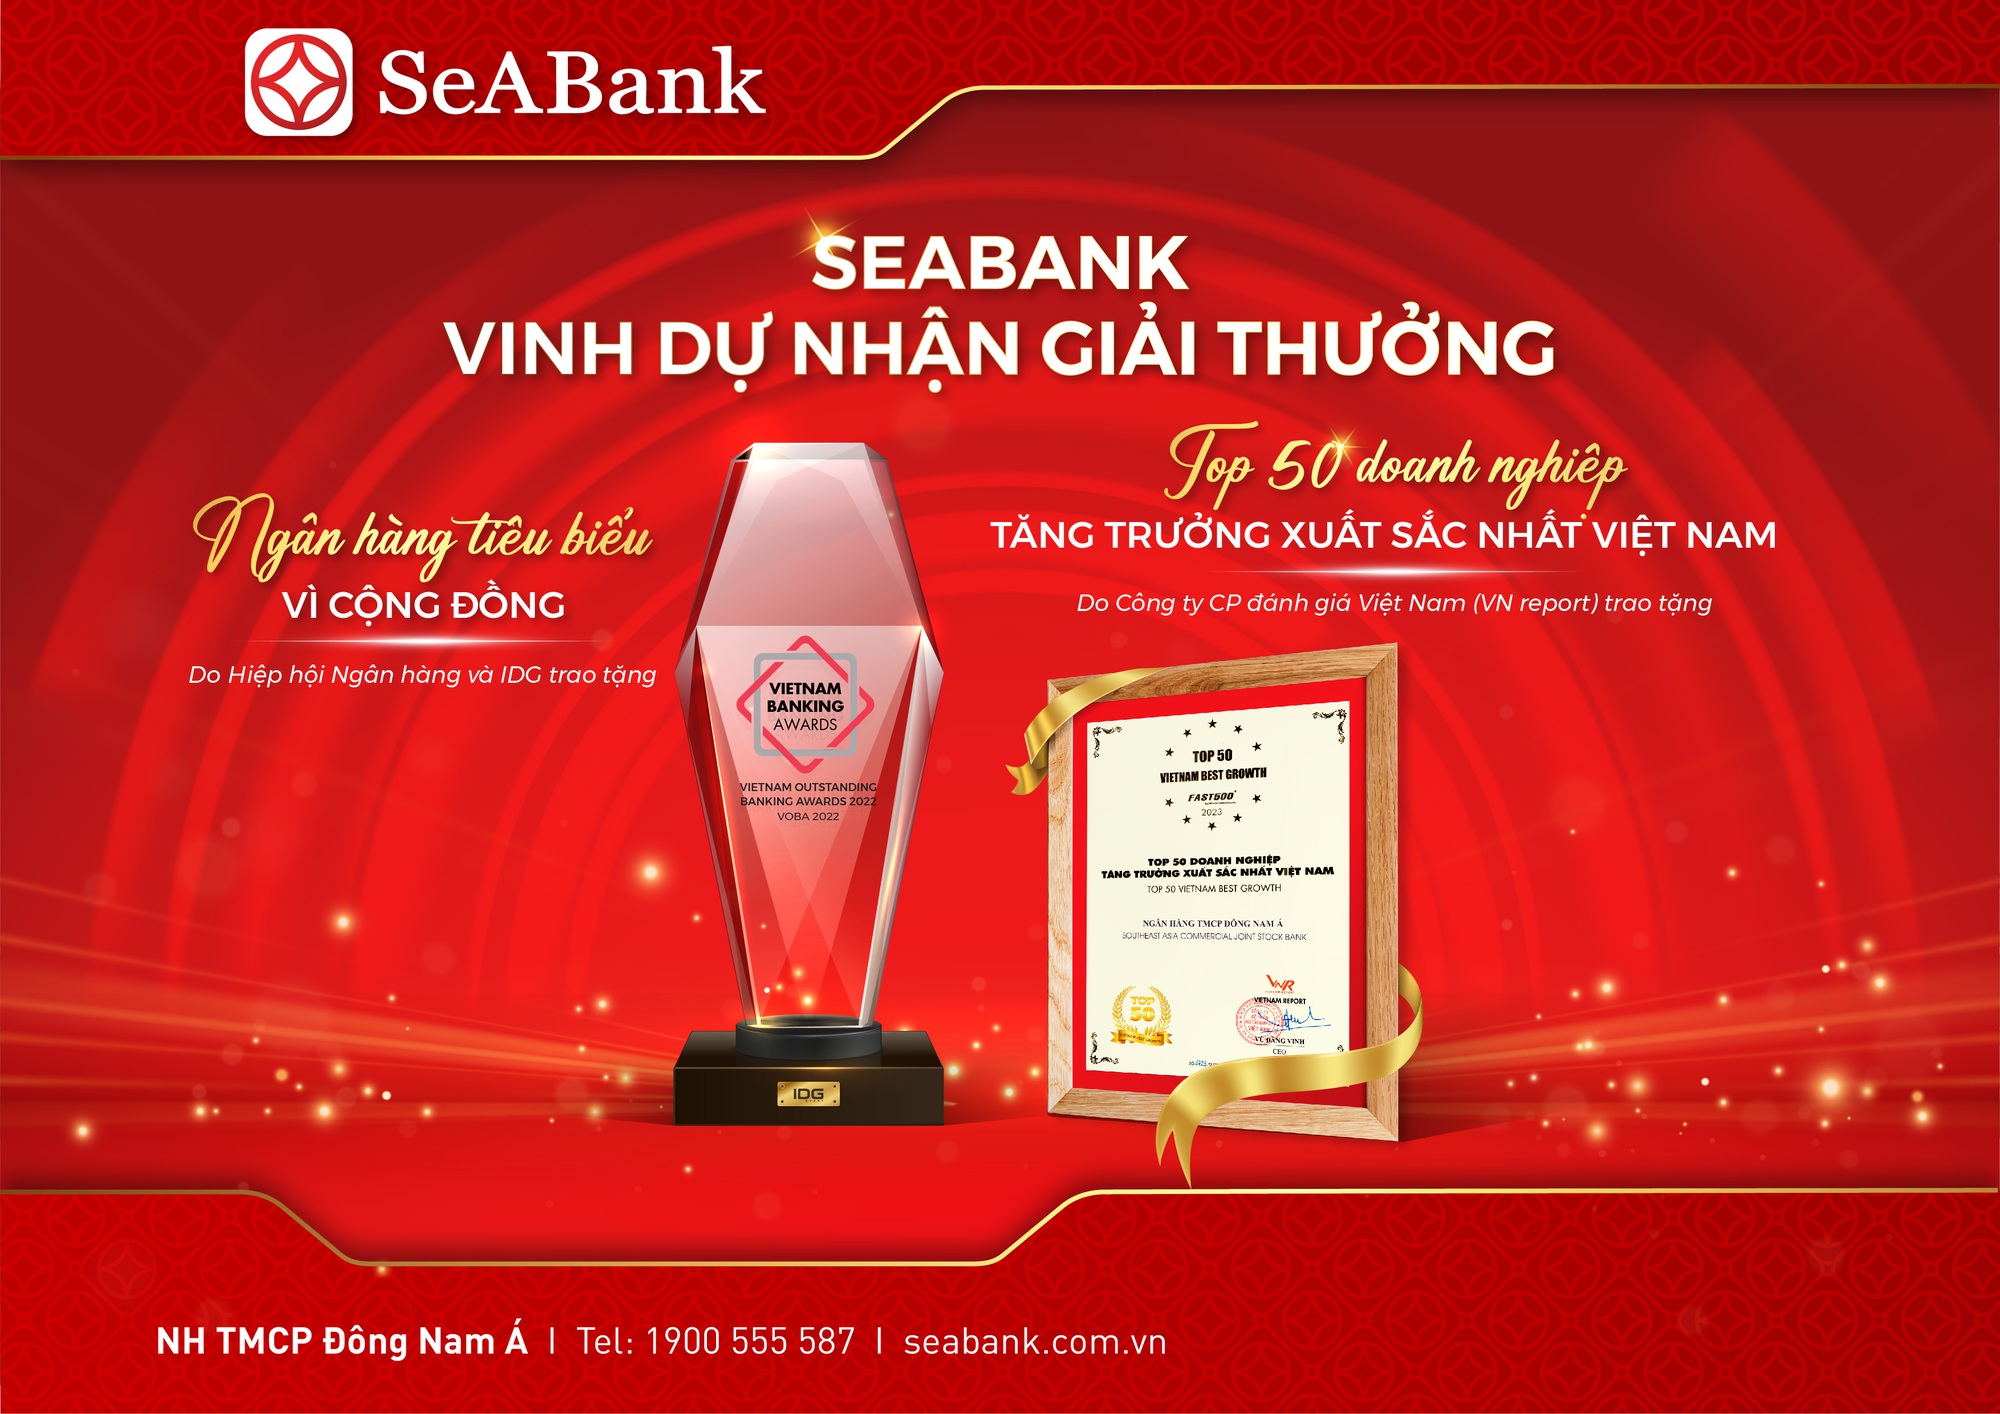 SeABank được vinh danh Ngân hàng tiêu biểu vì cộng đồng 2022 và Top 50 Doanh nghiệp tăng trưởng xuất sắc nhất Việt Nam - Ảnh 1.